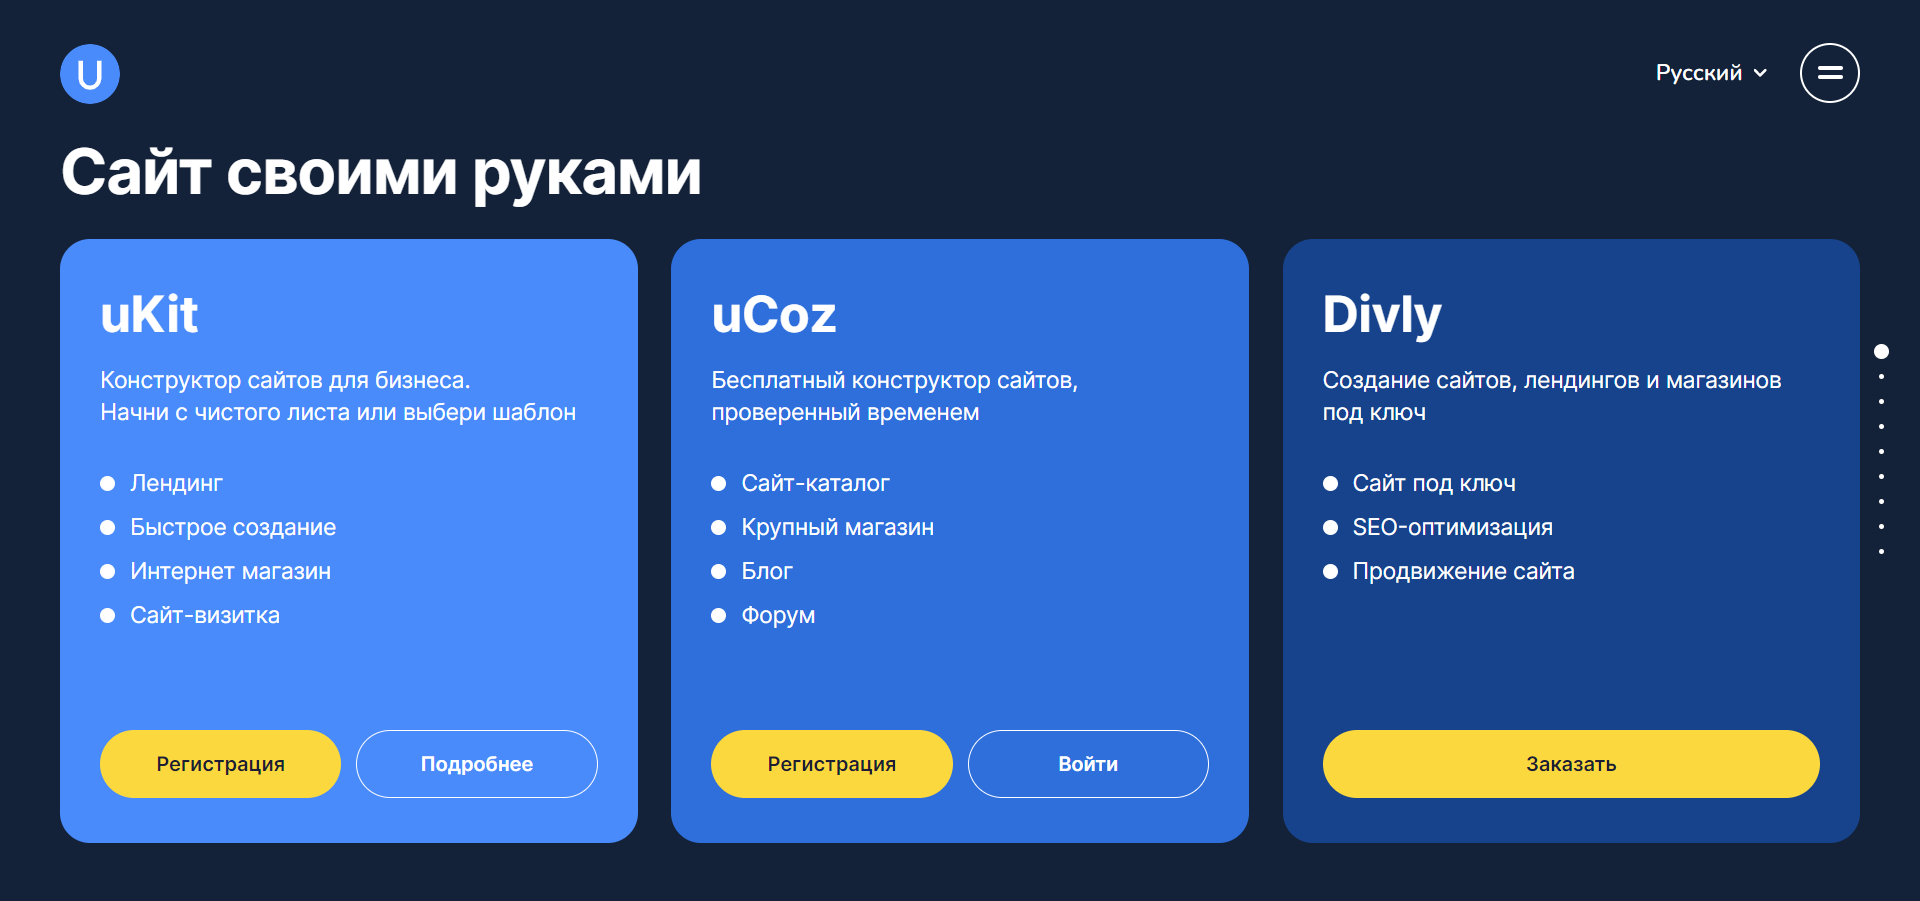 Website designer uCoz